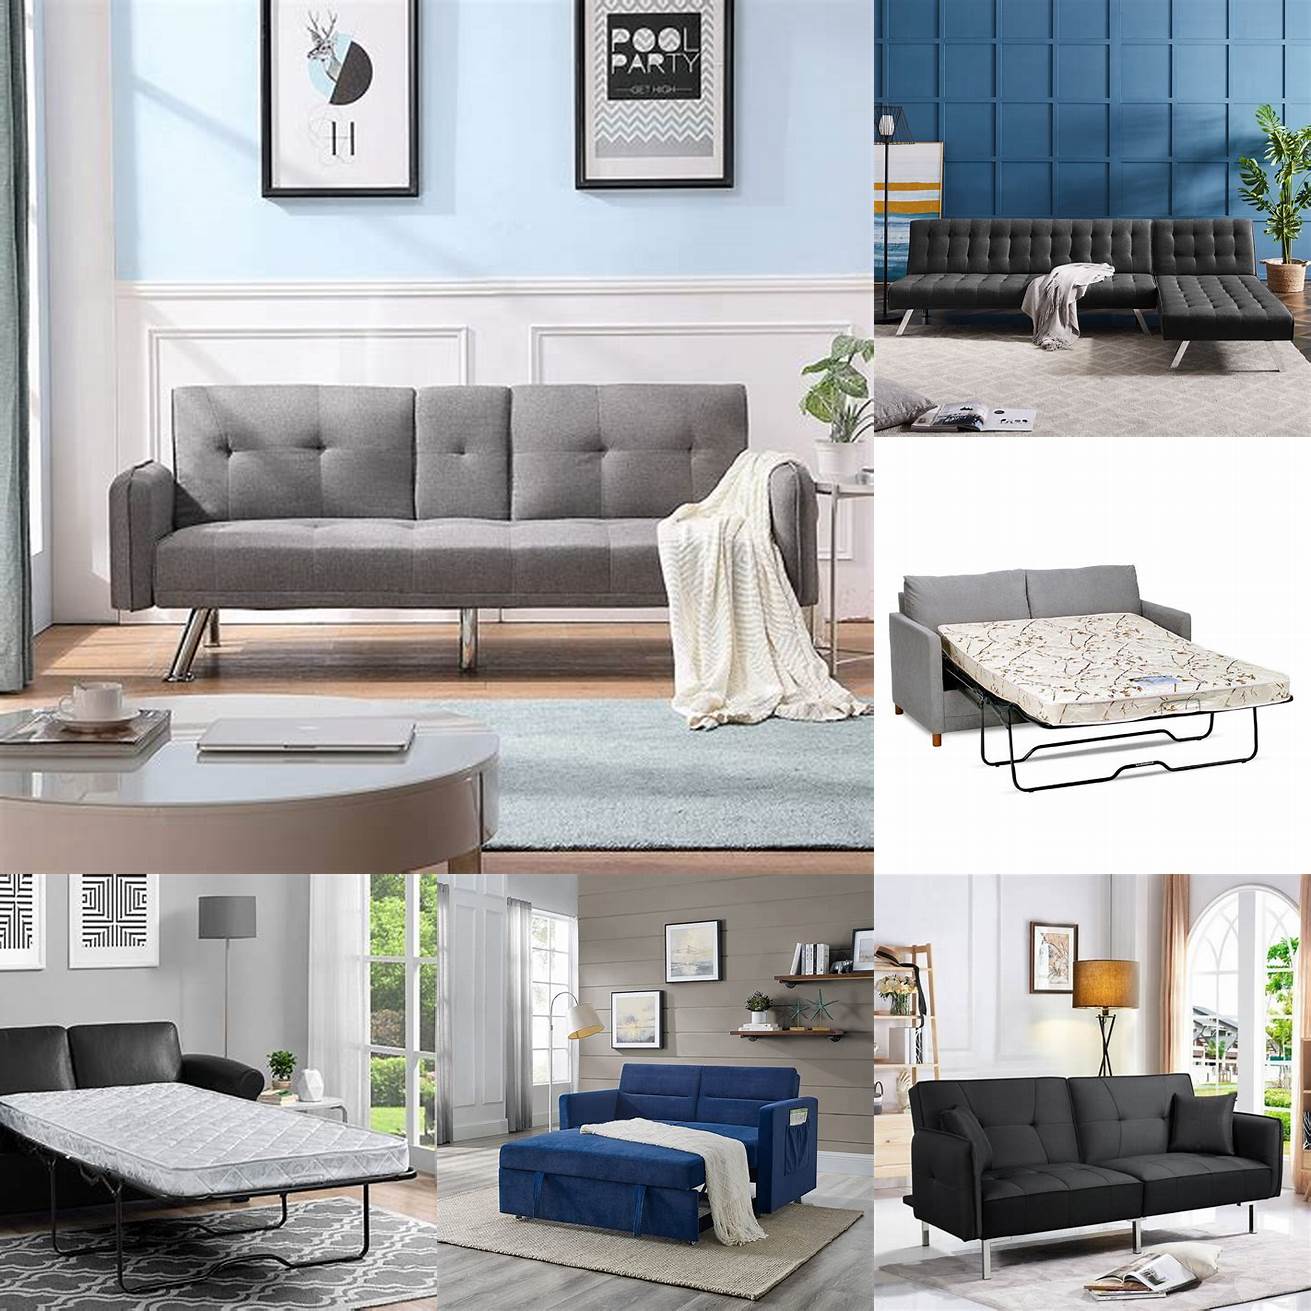 A metal Full Sleeper Sofa is a sturdy and modern option